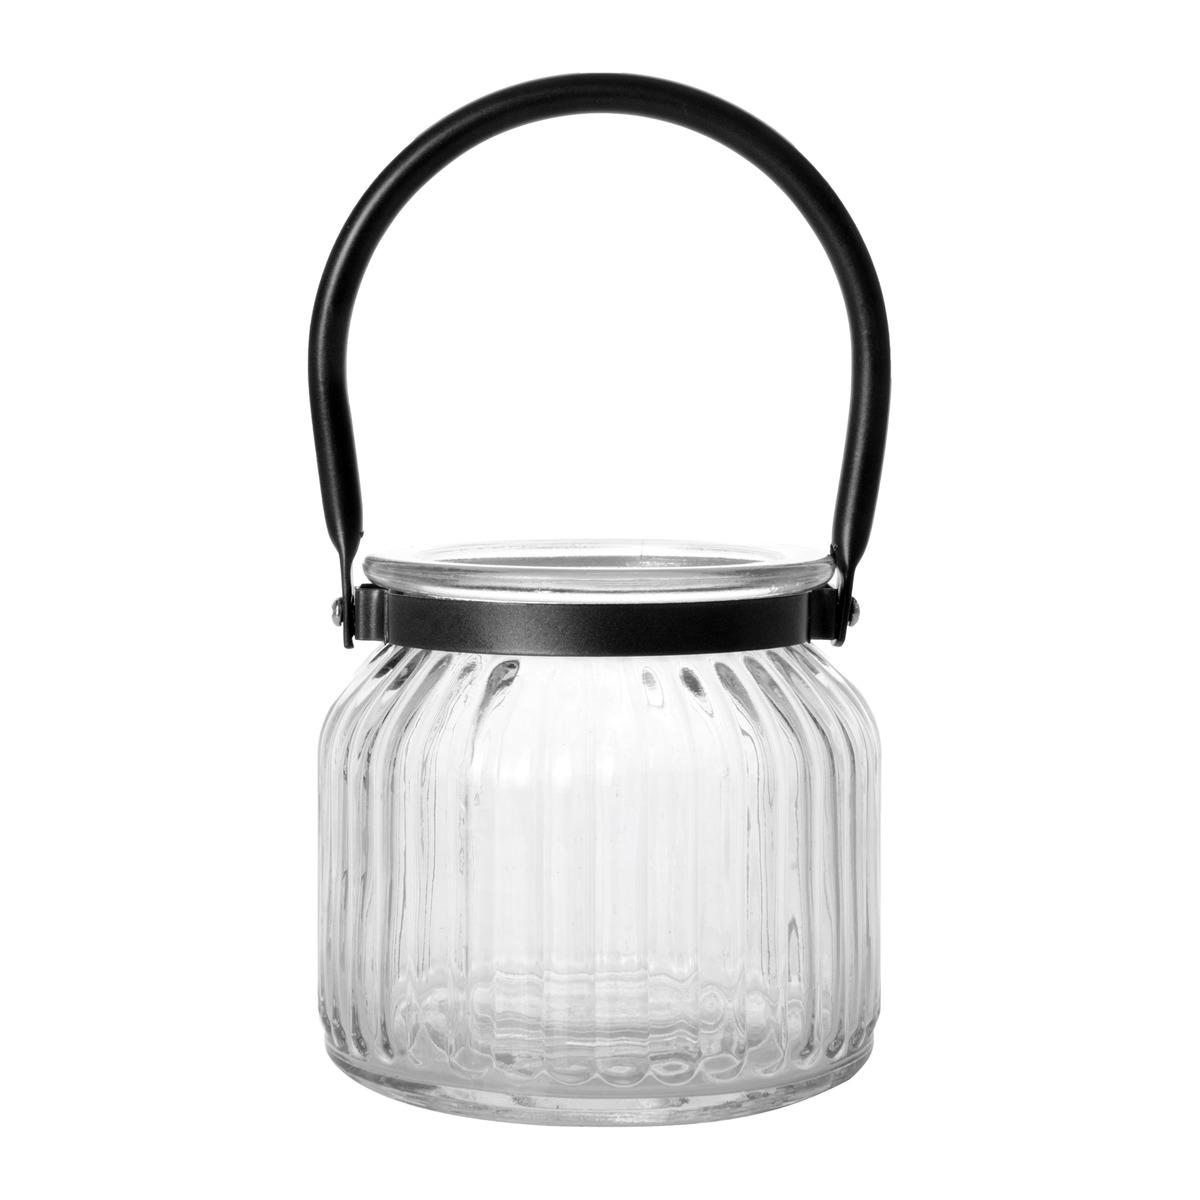 Pot en verre avec poignée - 11 x 11 x 10 cm - Transparent